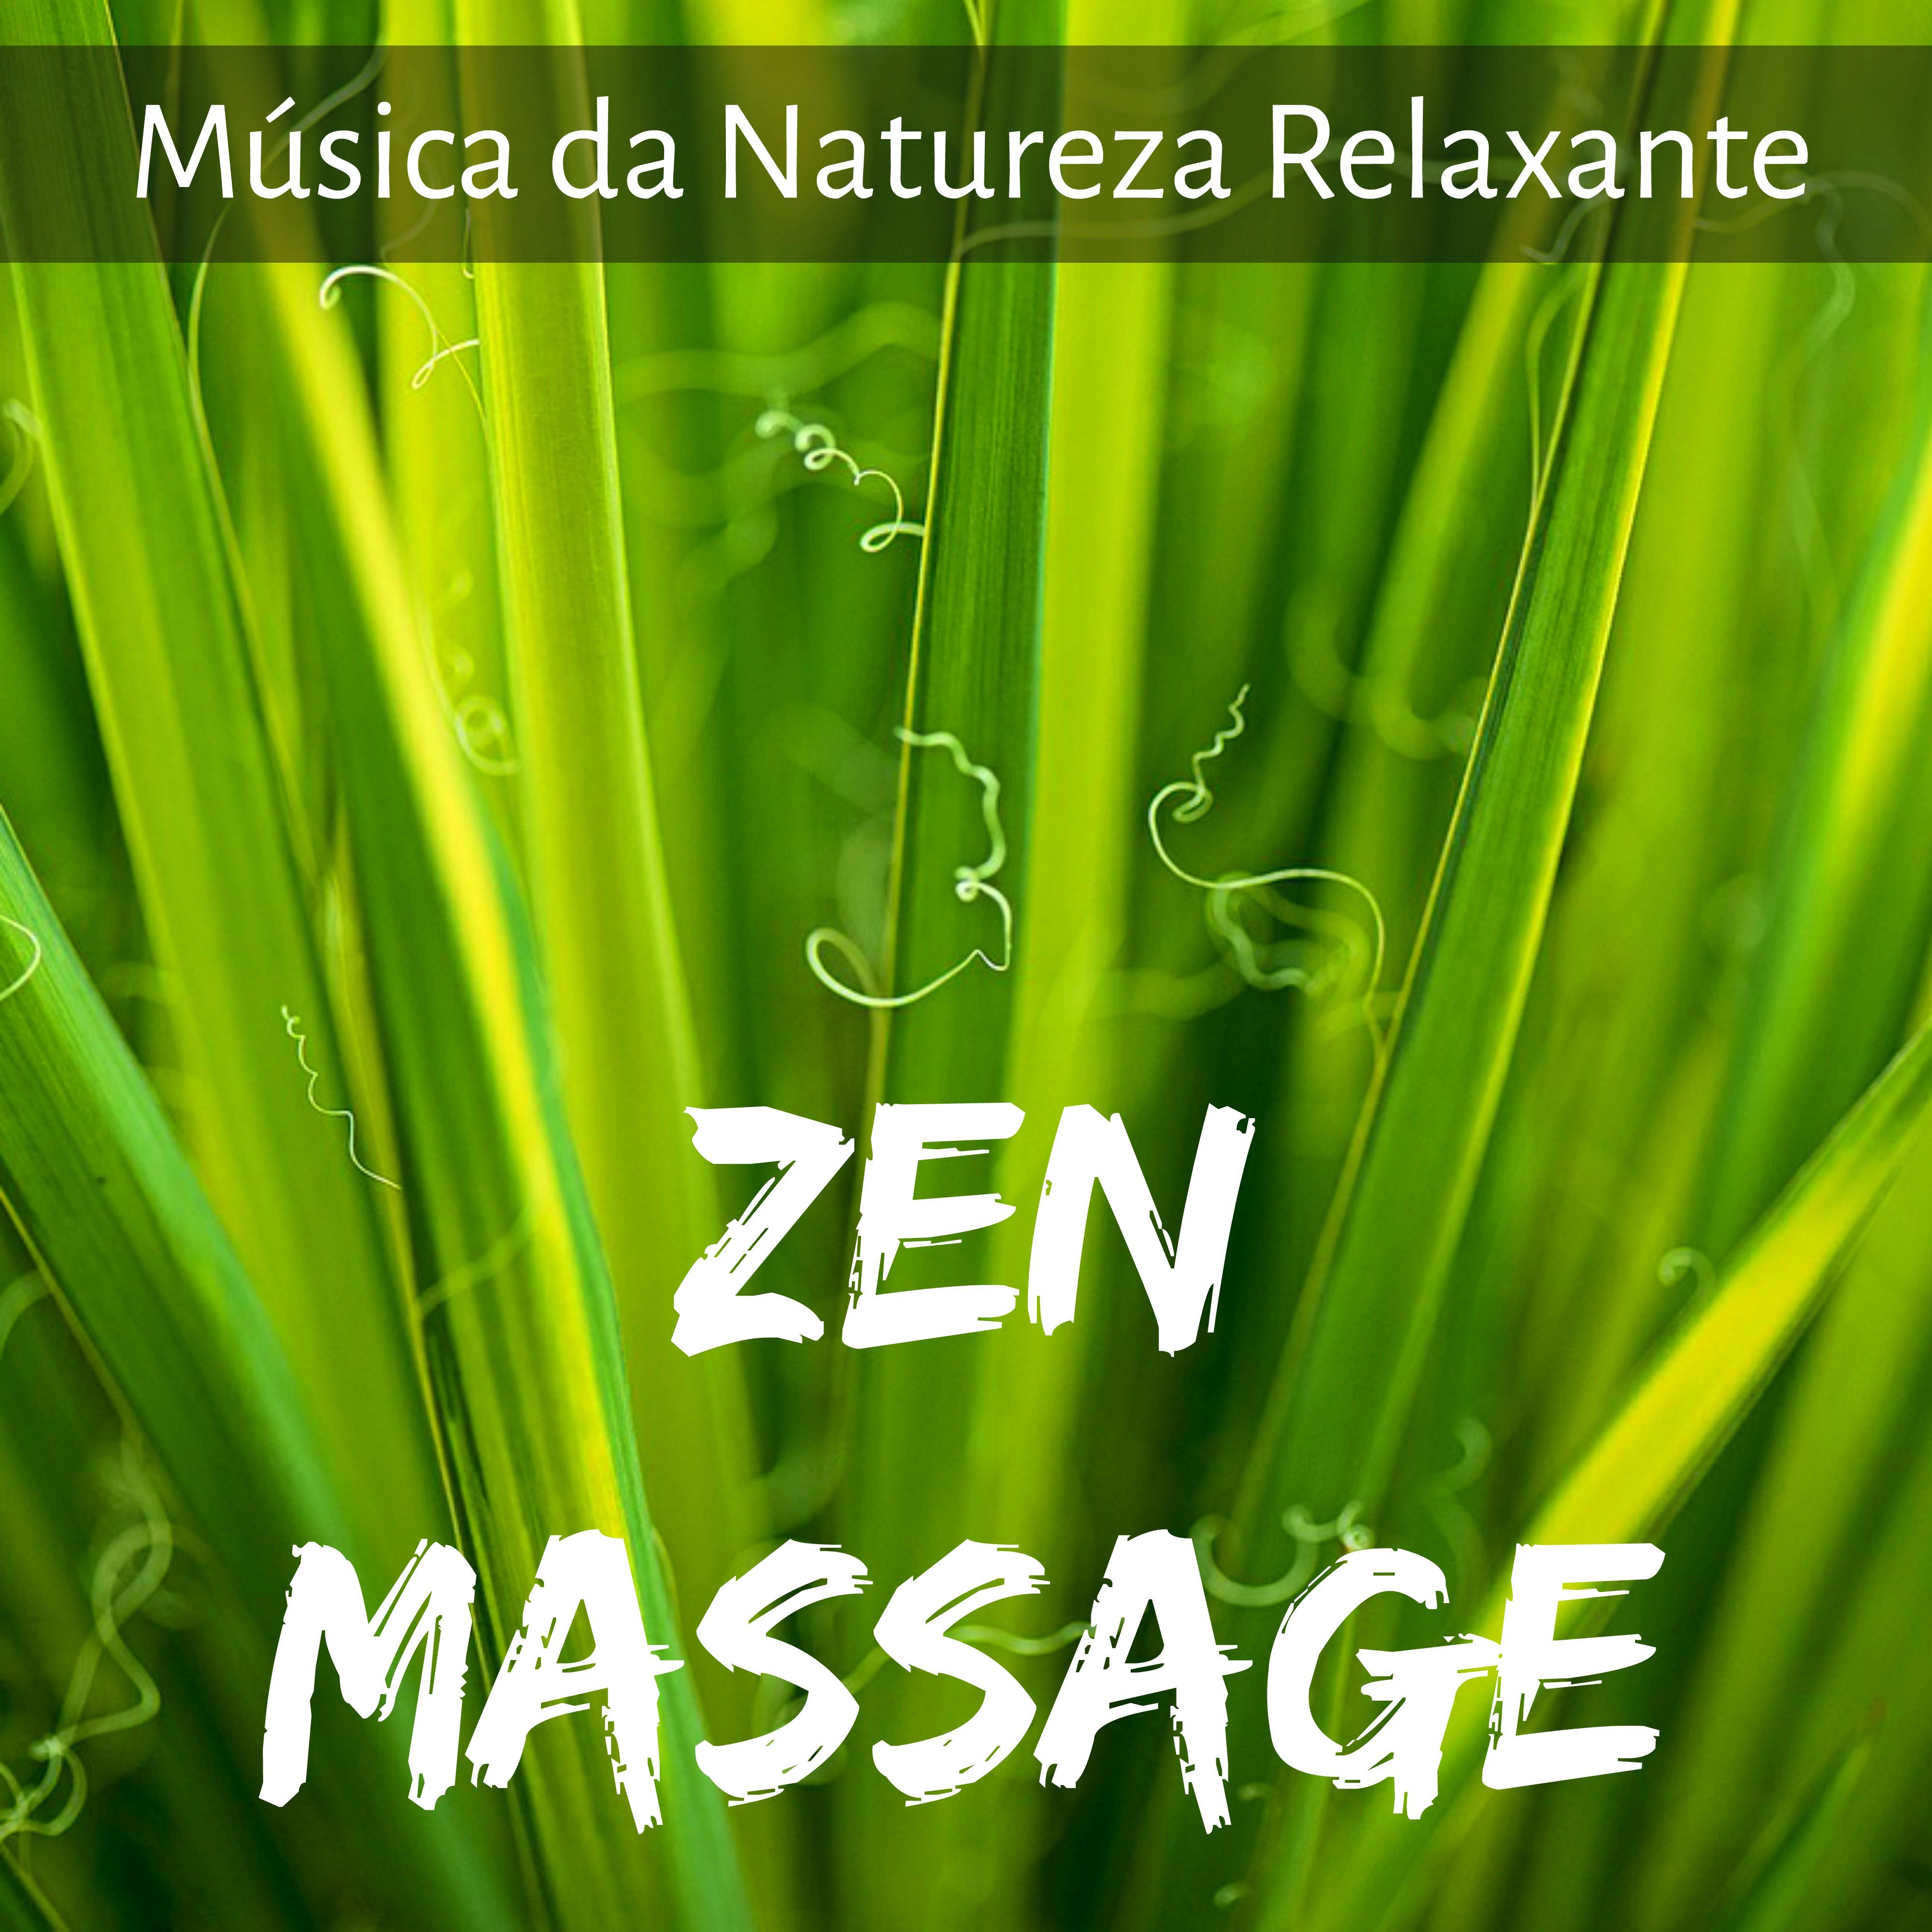 Zen Massage - Música da Natureza Relaxante para Bom Sono Meditação Chakras Saúde Bem Estar com Sons Instrumentais New Age Binaurais